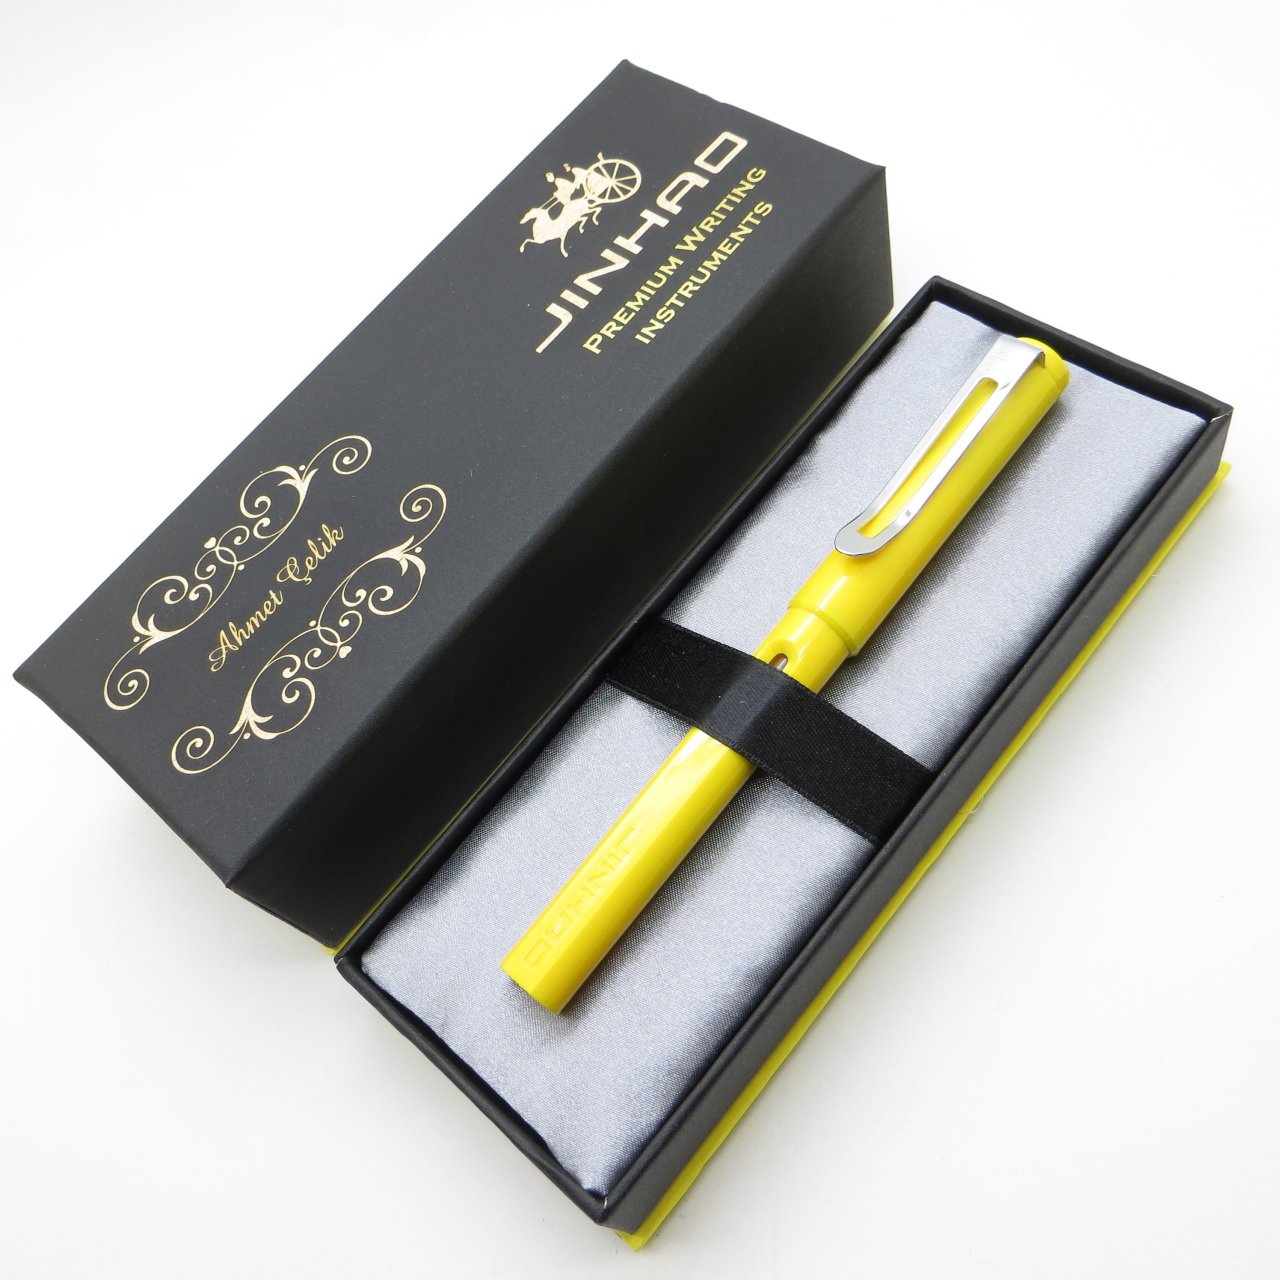 Jinhao Parlak Sarı Dolma Kalem | İsme Özel Kalem